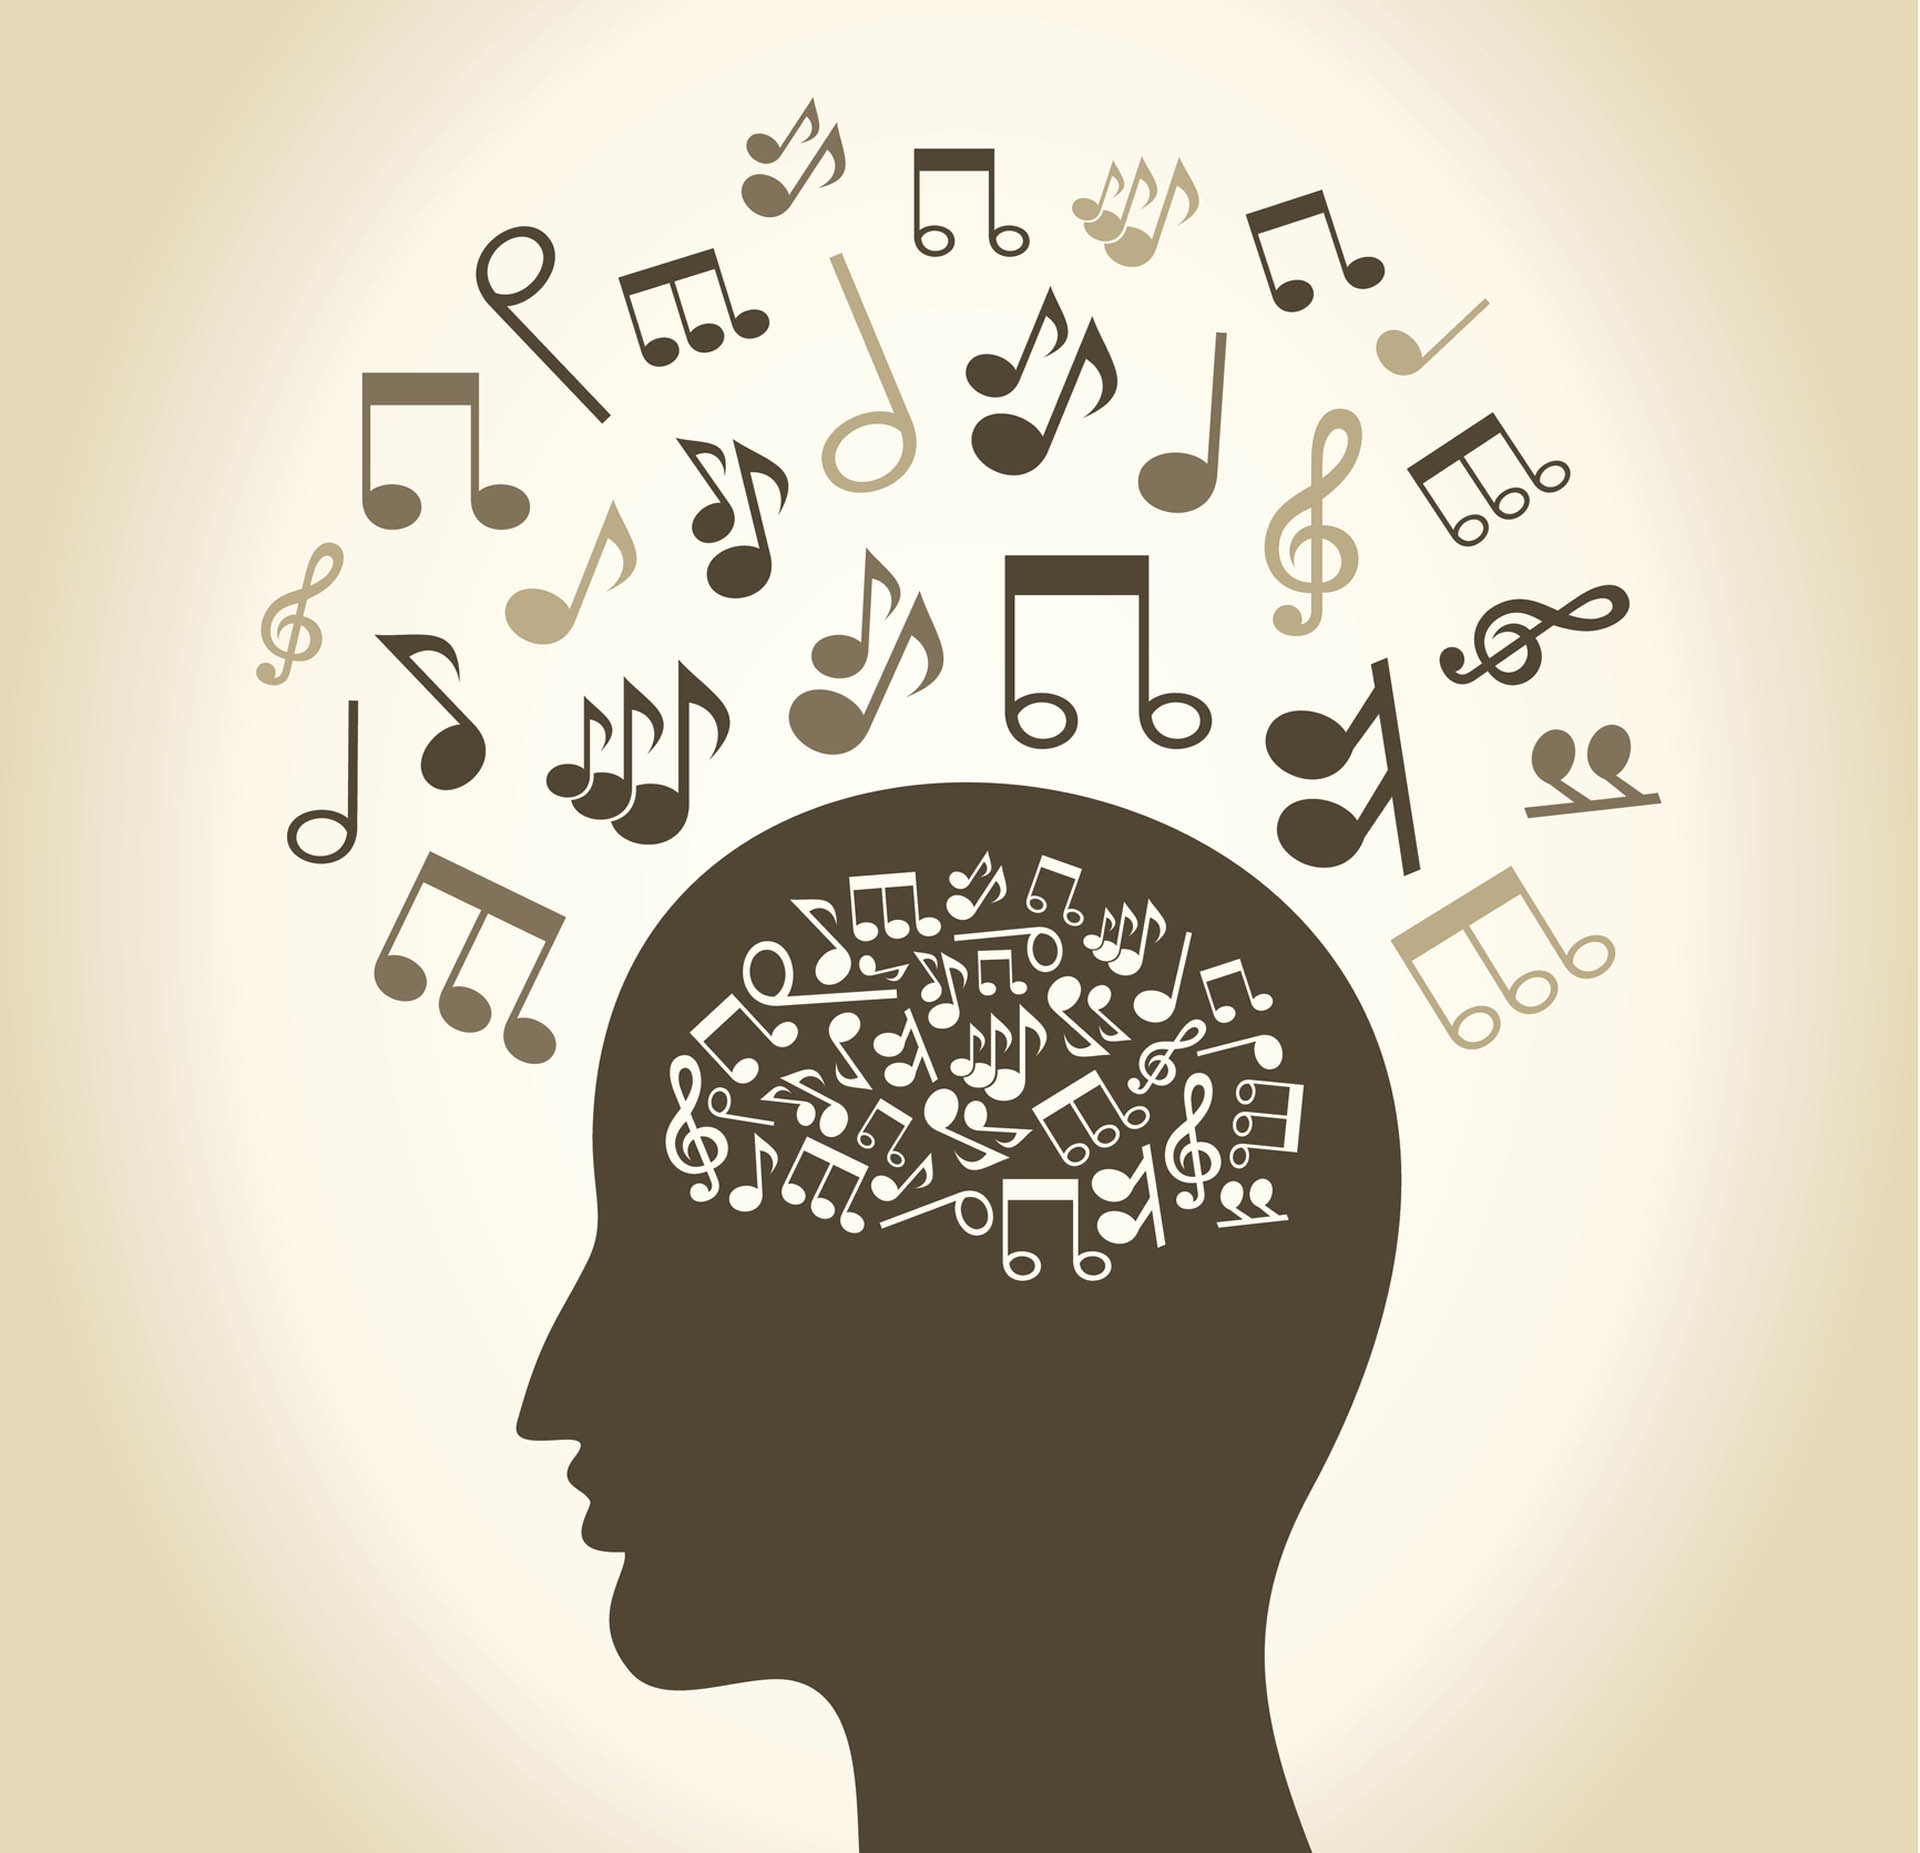 “La música puede generar e inducir emociones positivas, regular estados emocionales displacenteros y reducir el estrés y la ansiedad”, había explicado Benavidez
(iStock)